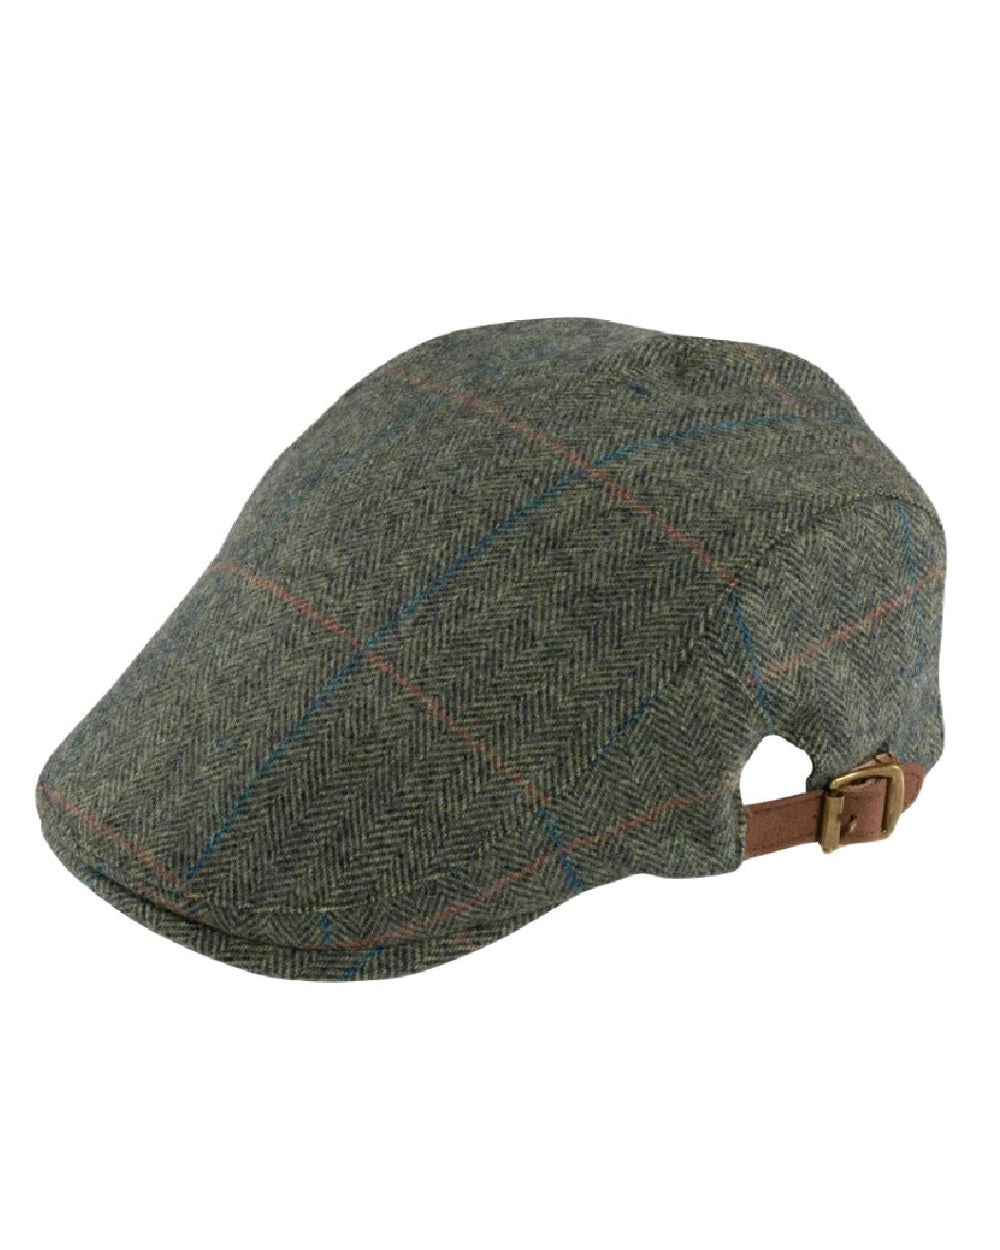 Alan Paine Combrook Adjustable Tweed Cap in Spruce 